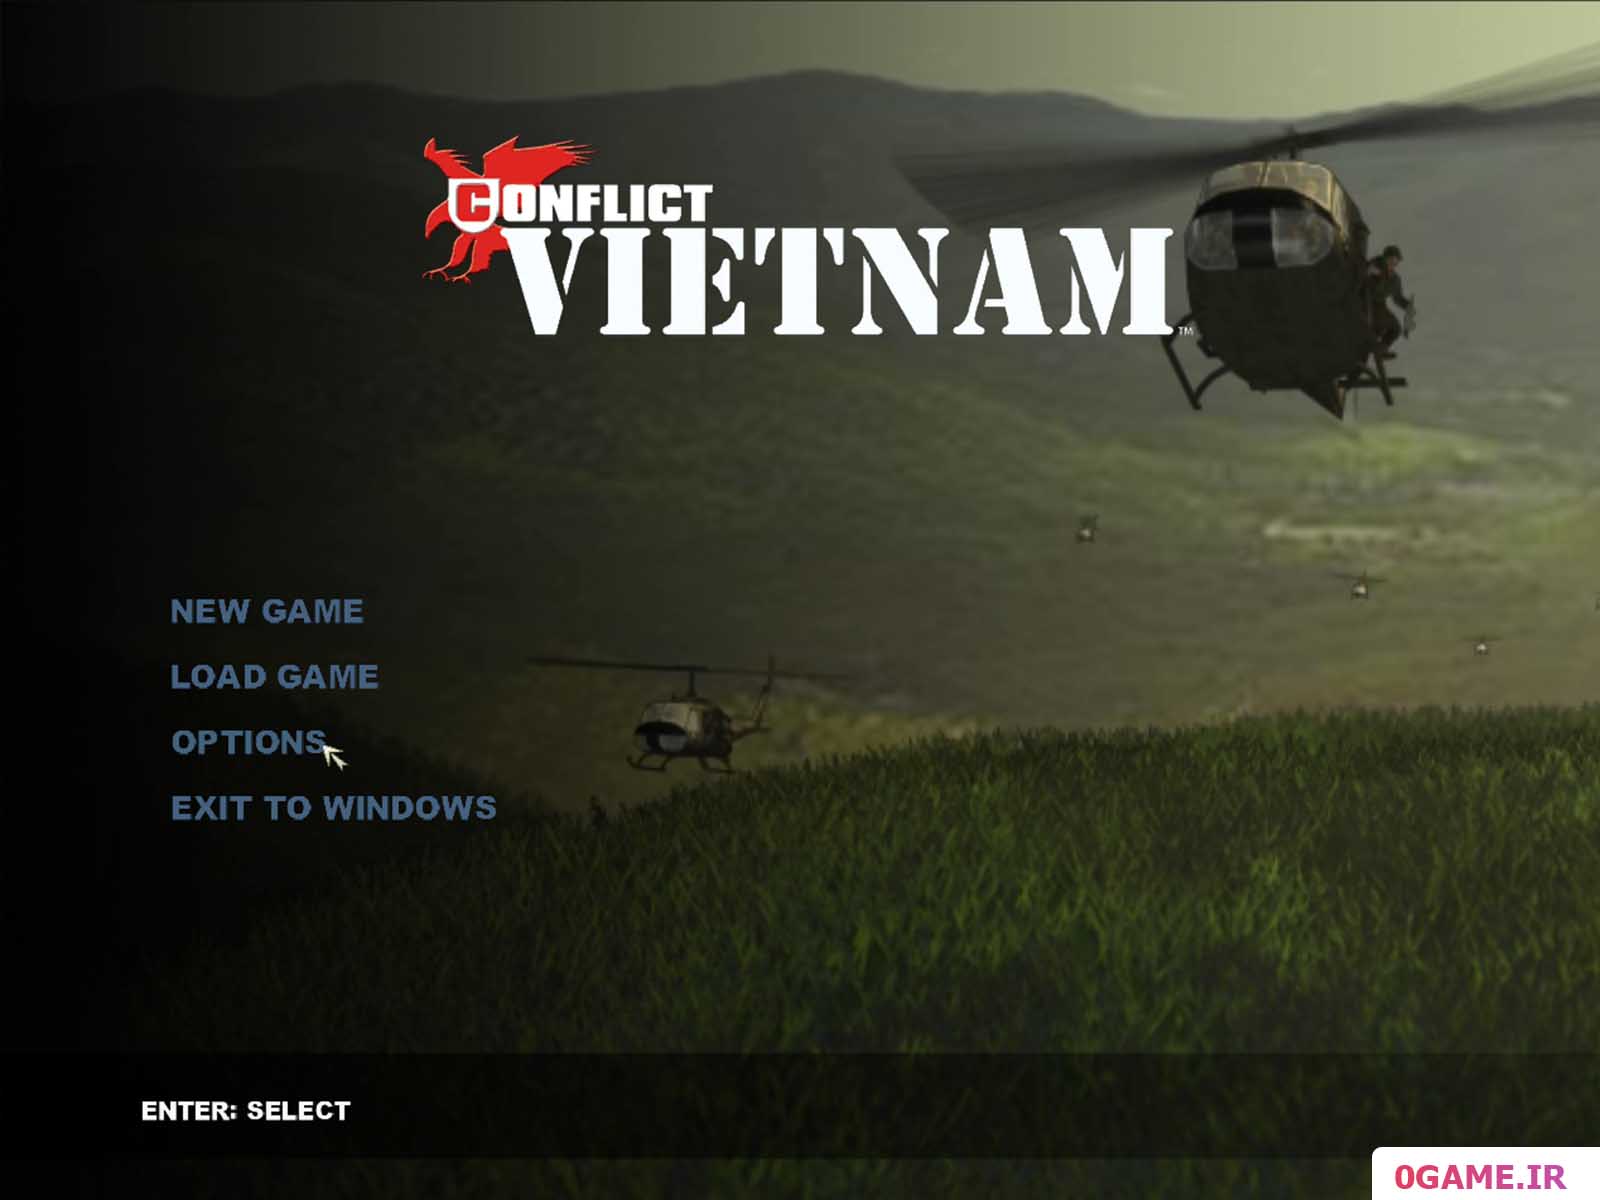 دانلود بازی کانفلیکت ویتنام نسخه کامل برای کامپیوتر